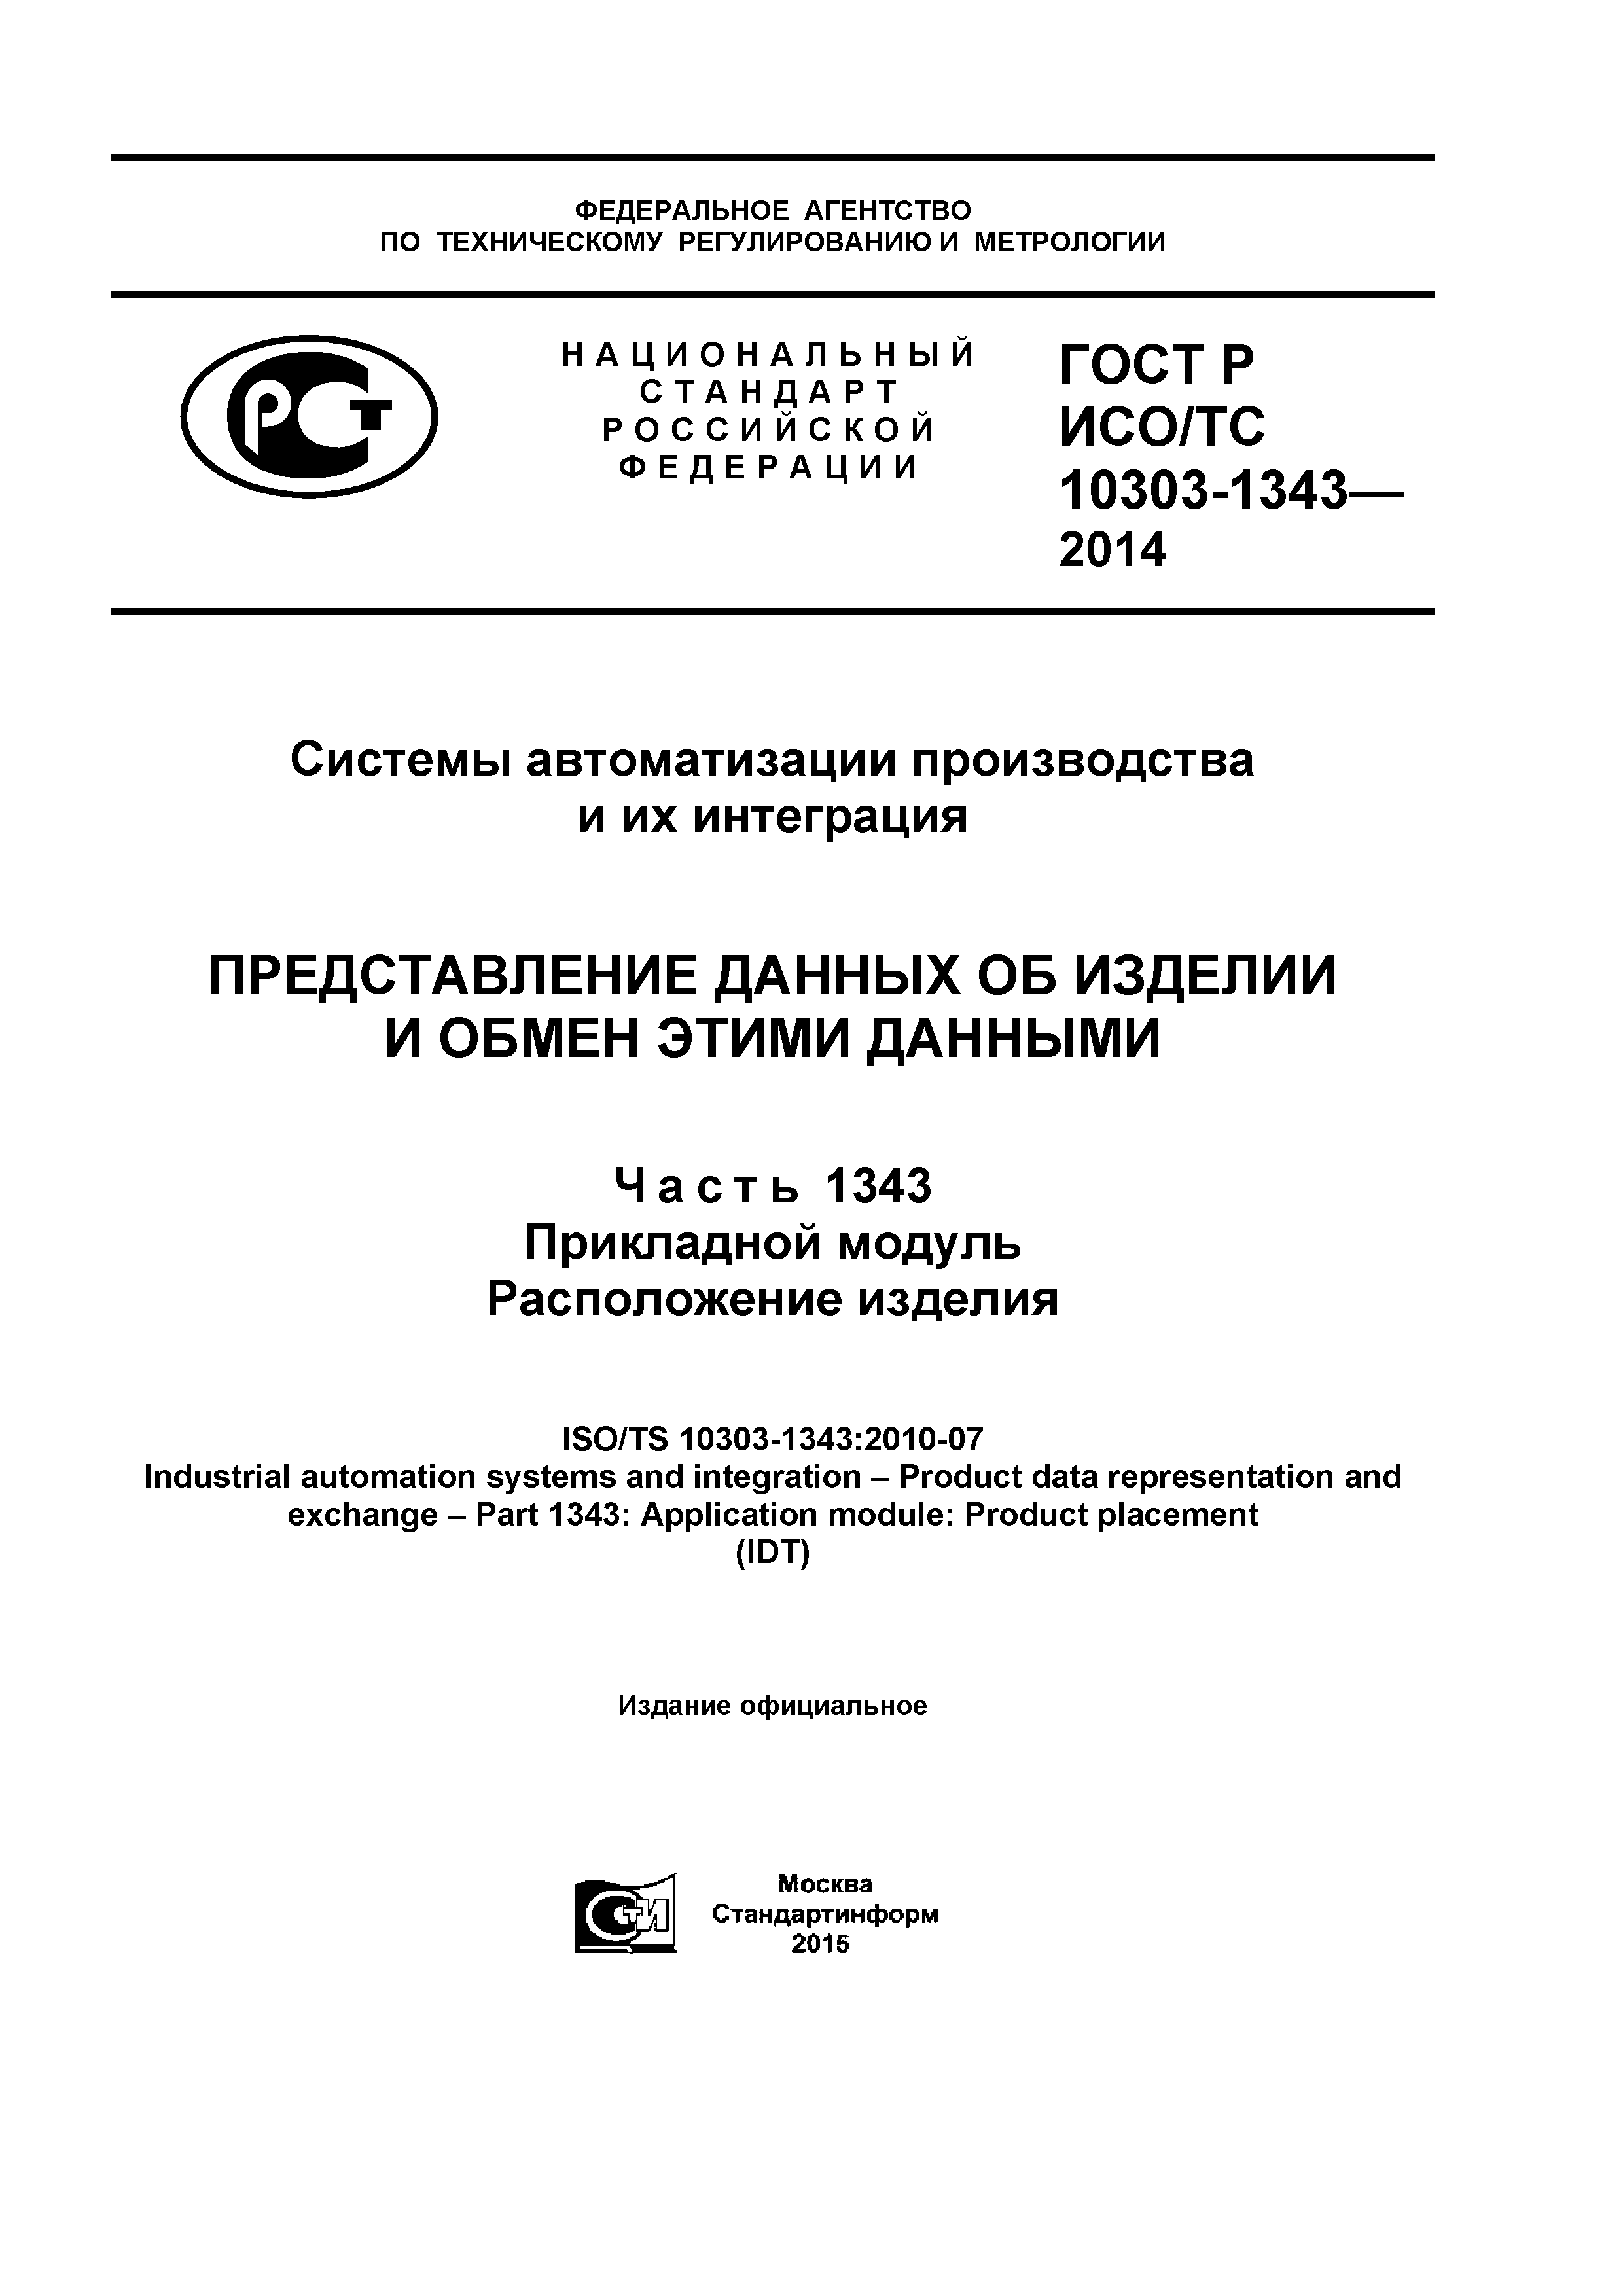 ГОСТ Р ИСО/ТС 10303-1343-2014